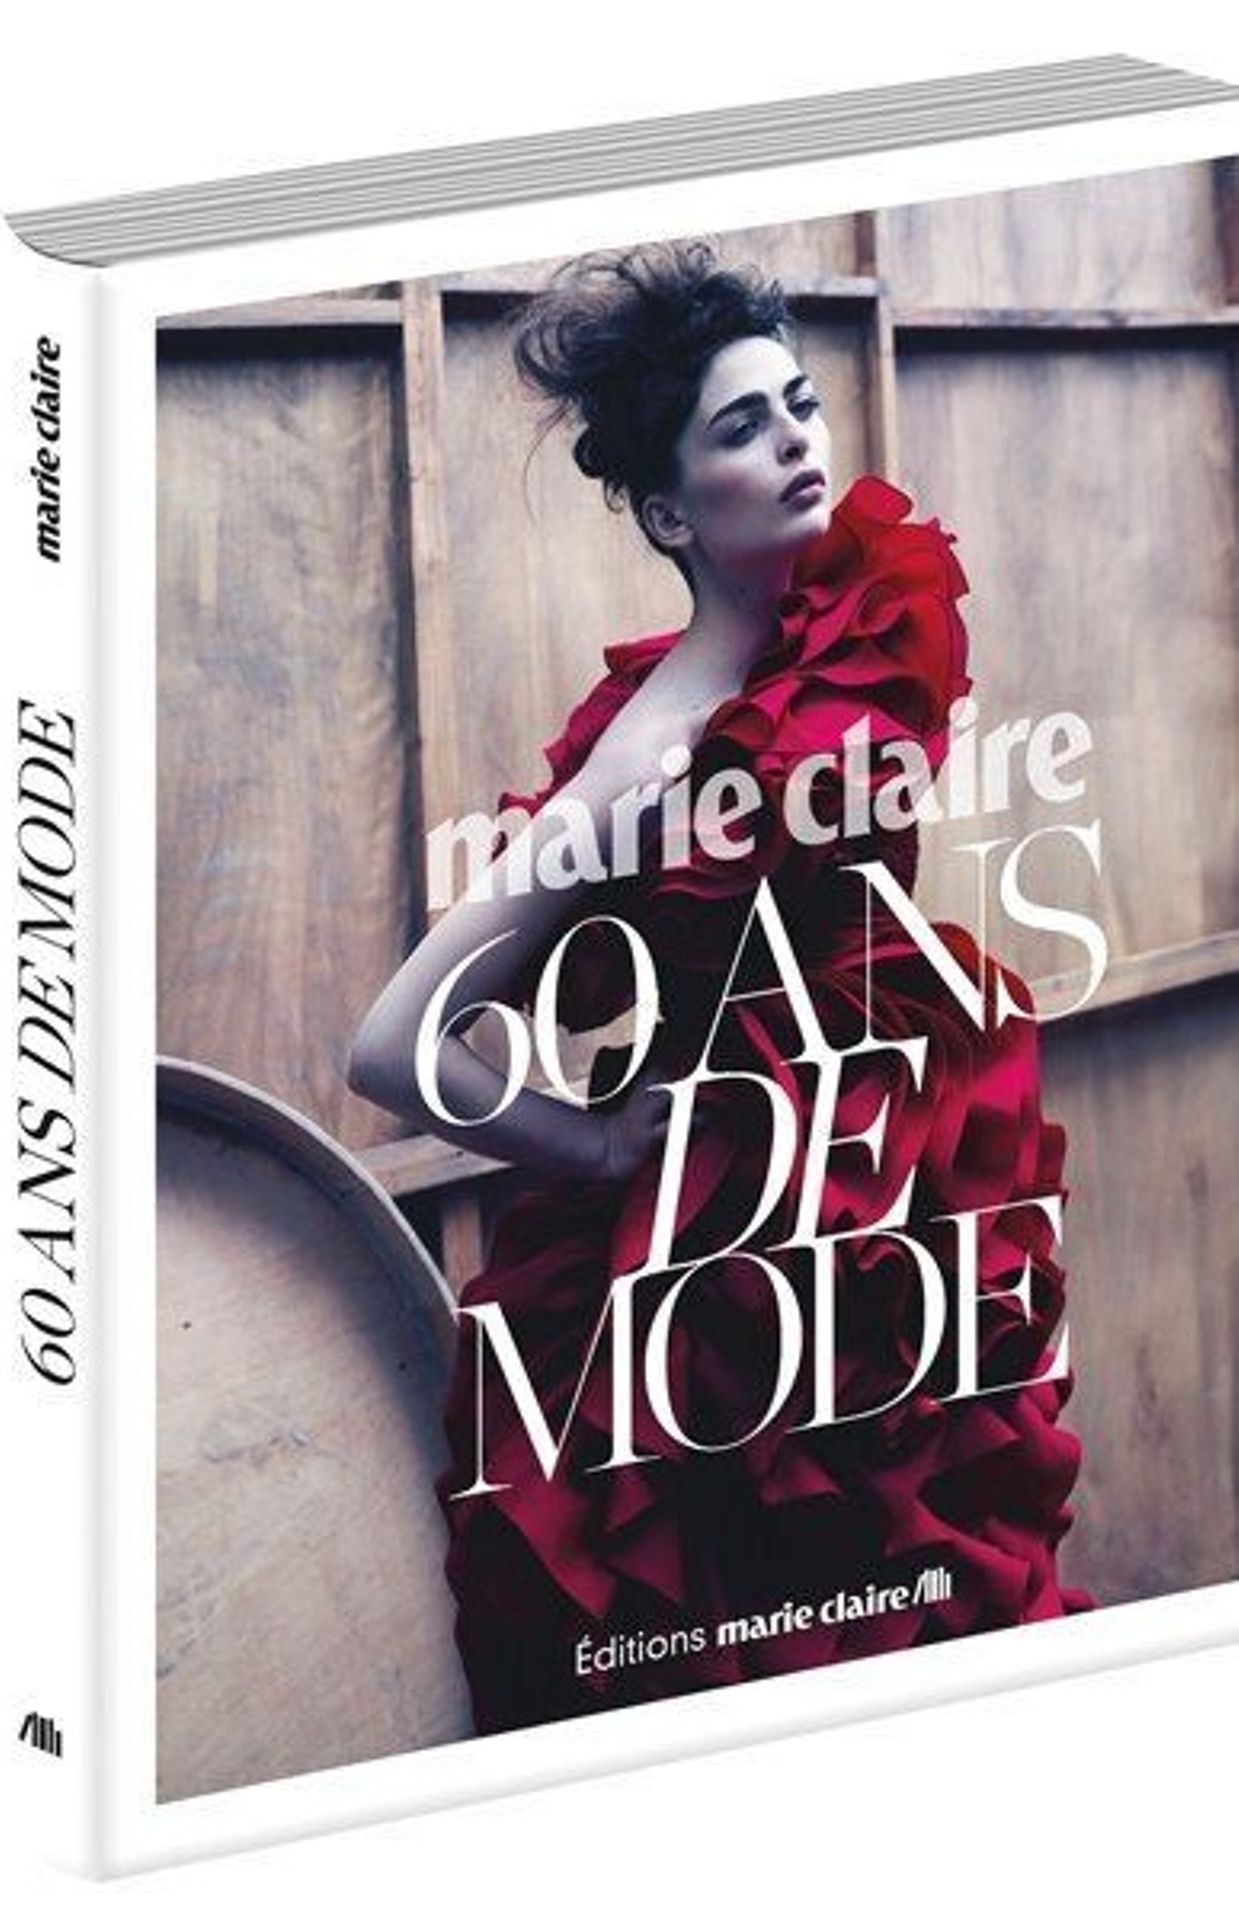 "Marie Claire, 60 ans de mode"